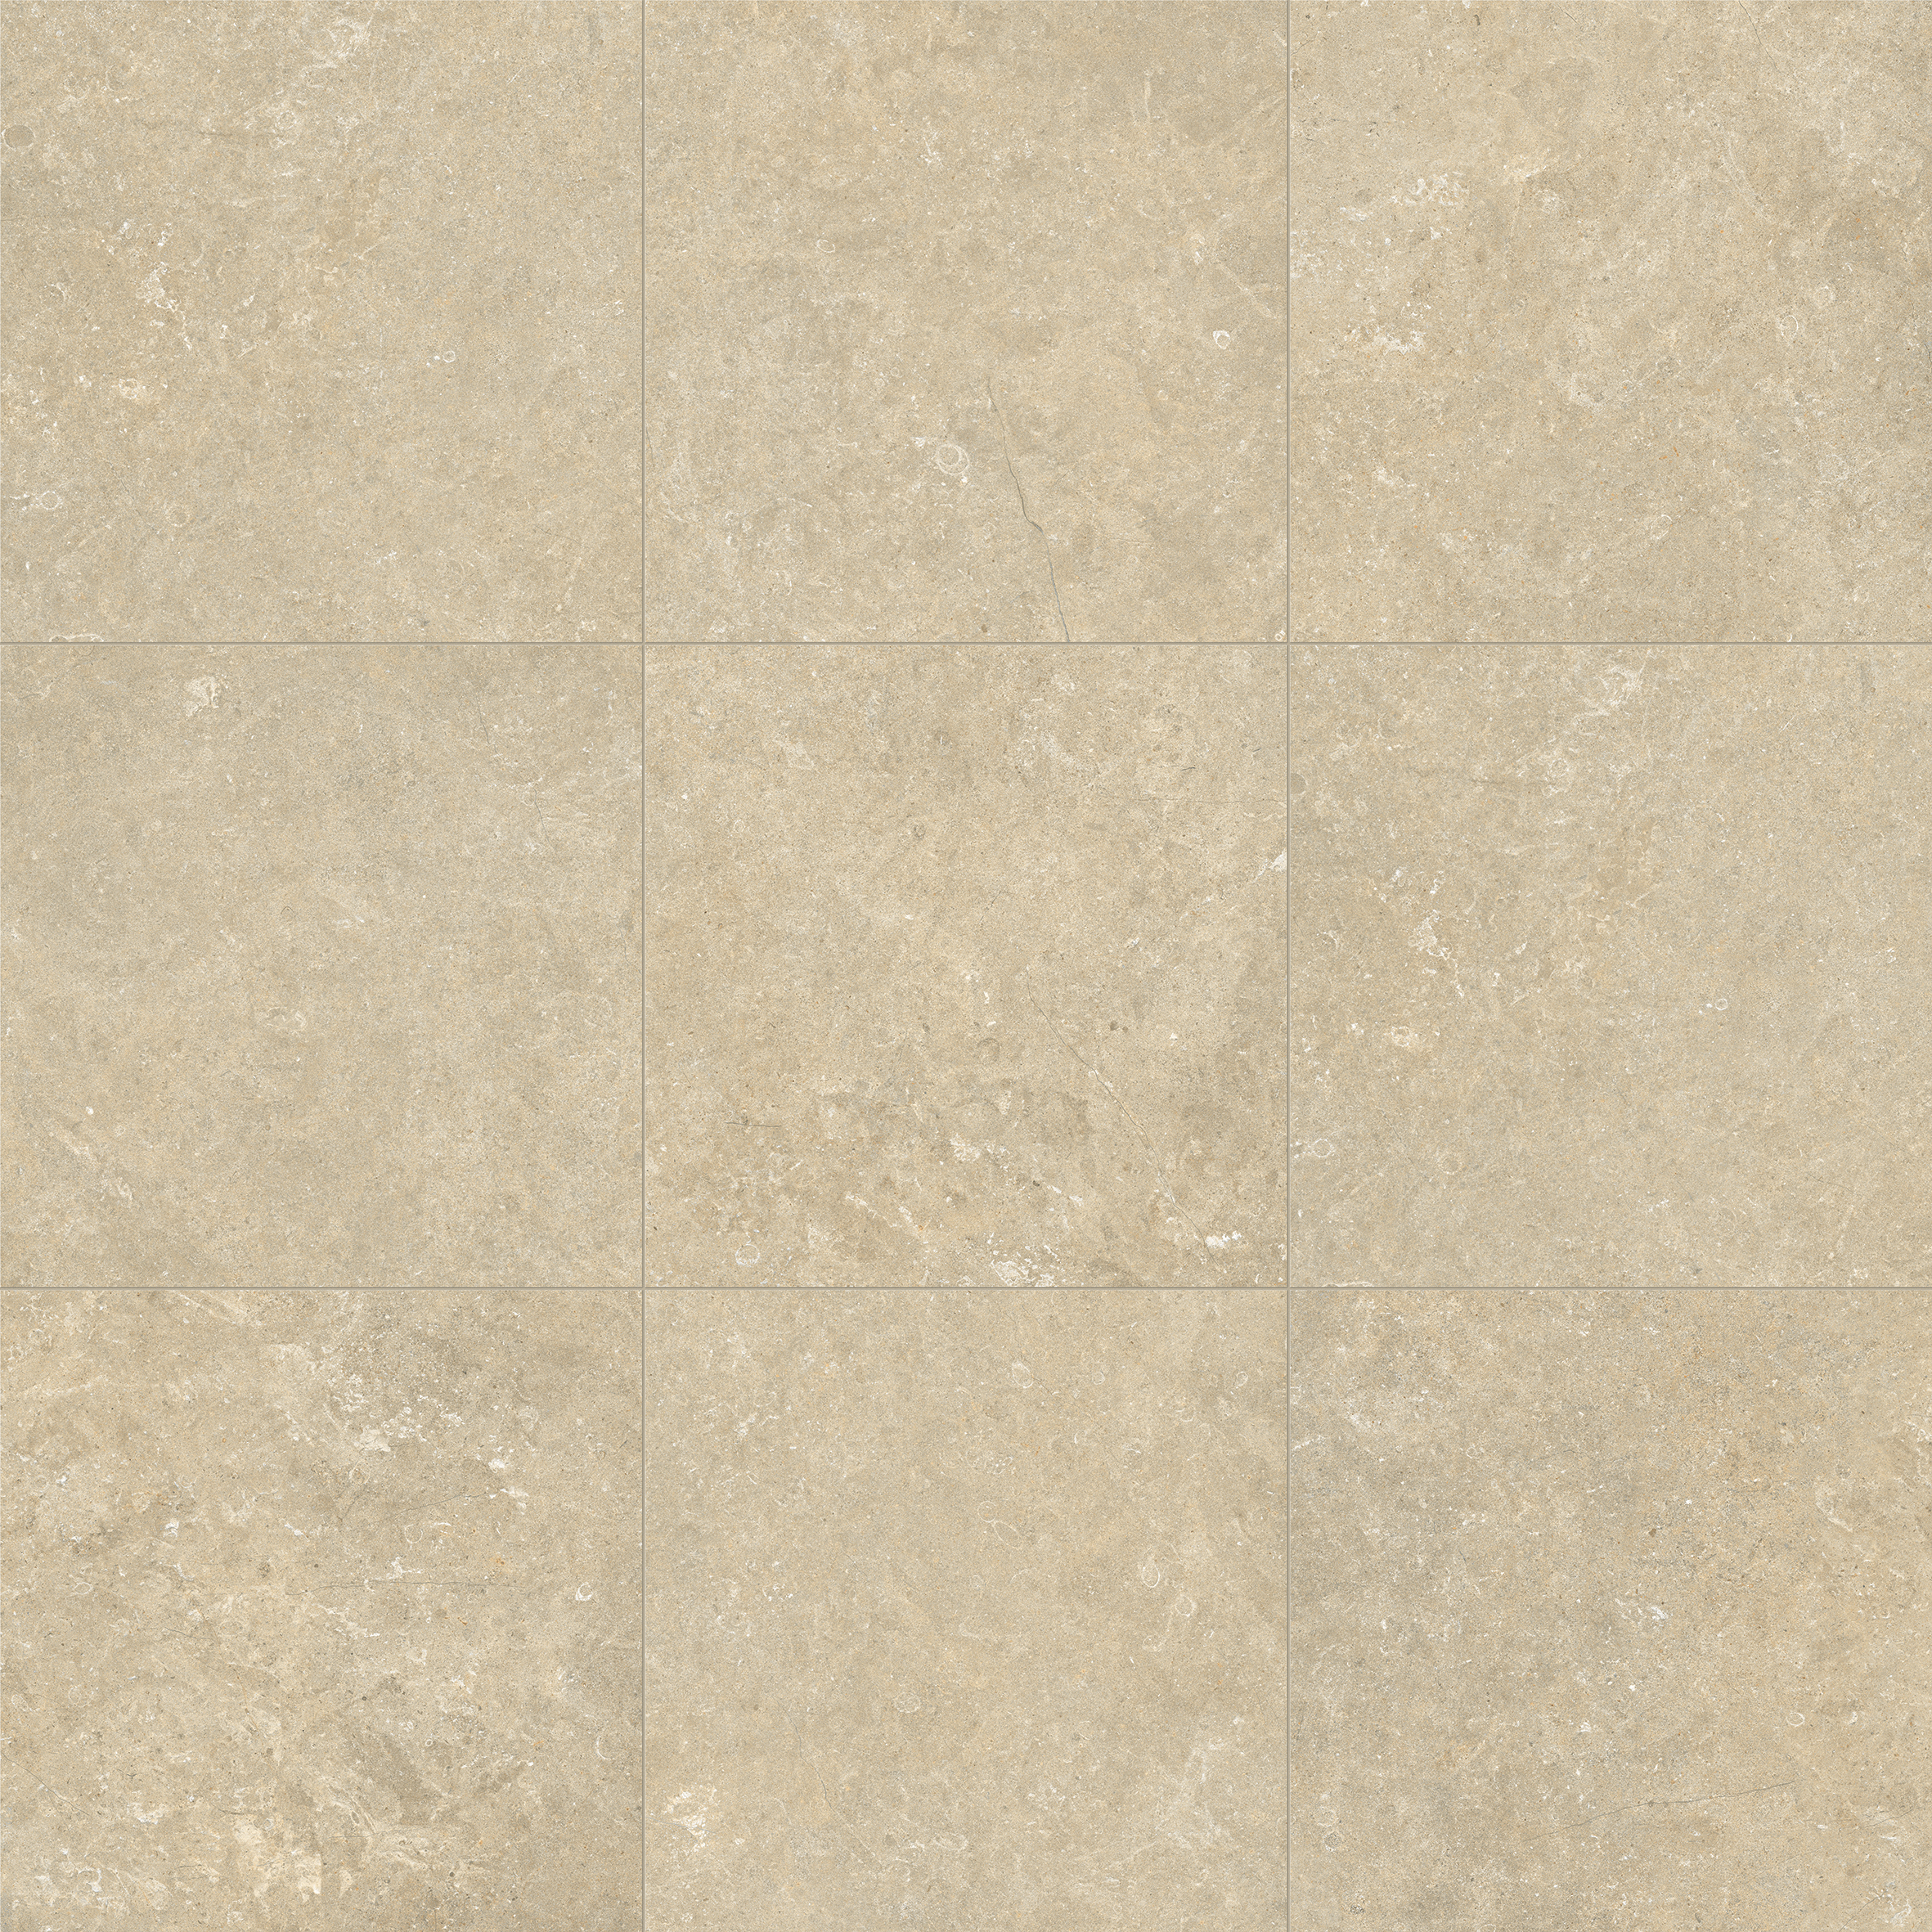 Marca Corona Arkistyle Sand Naturale – Matt Sand J219 natur matt 60x60cm rektifiziert 9mm